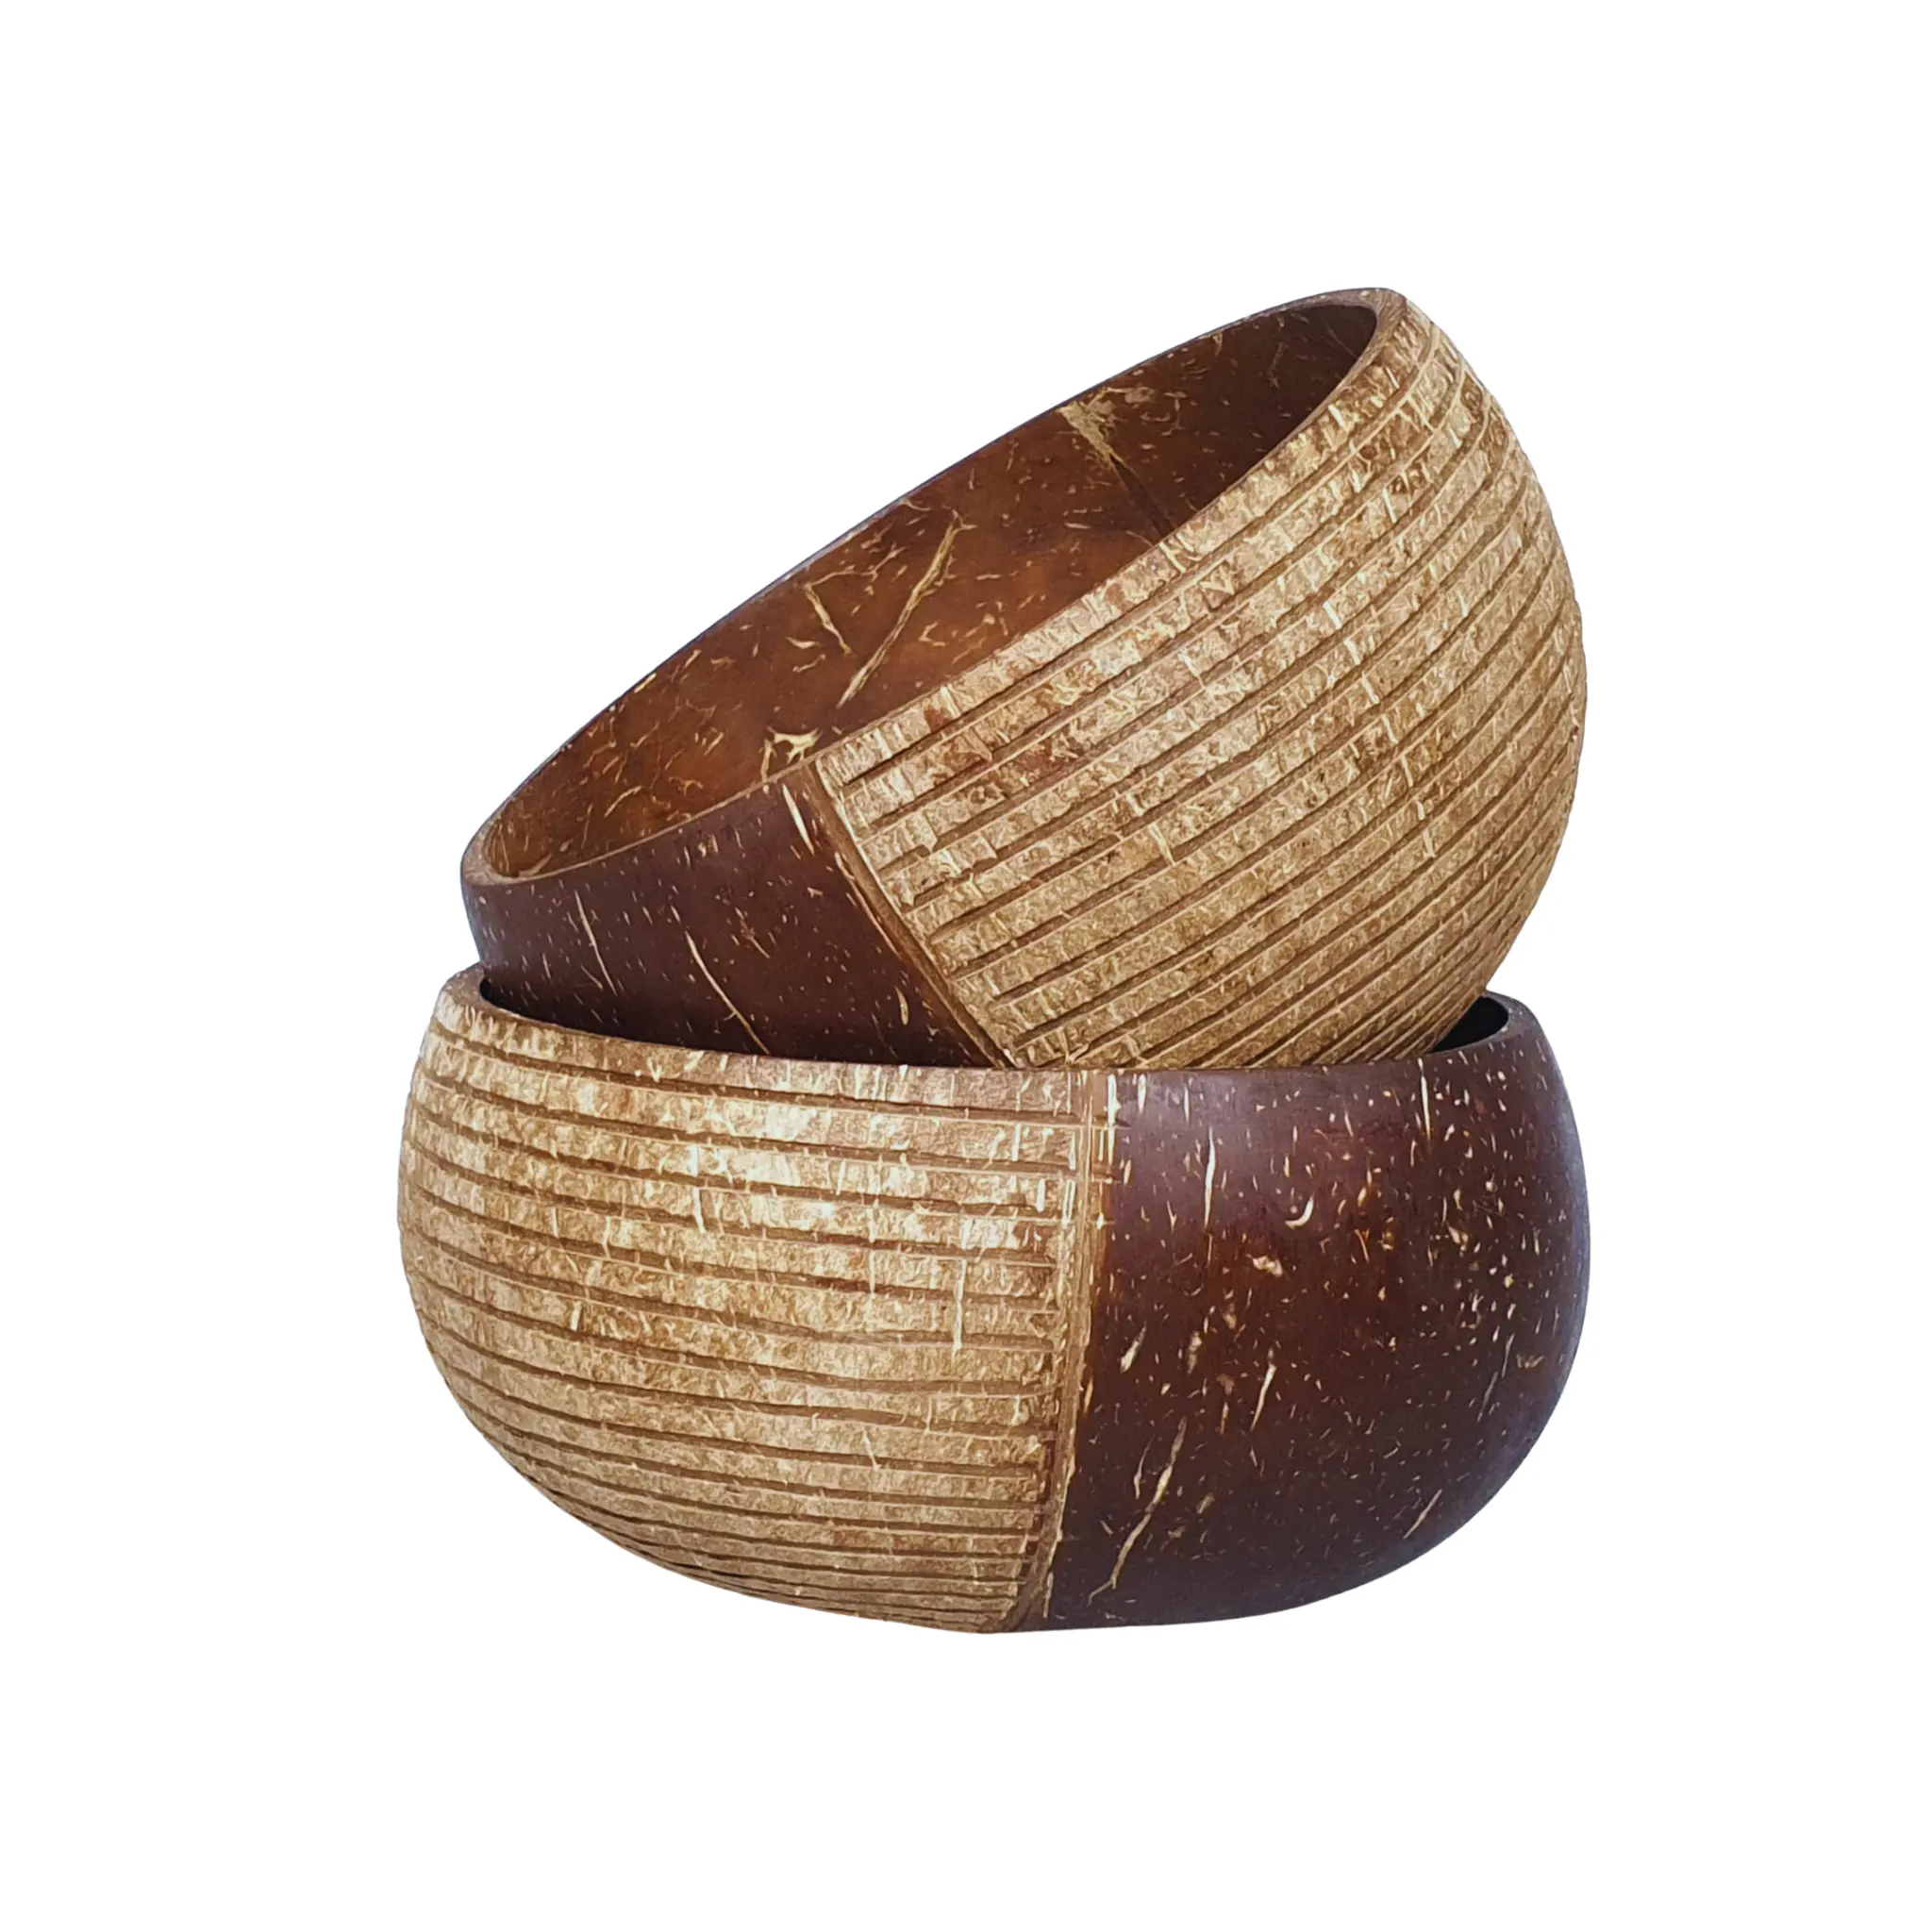 Venta superior 100% cuencos de cáscara de coco natural/cuencos y cuchara de cáscara de coco para decoración de alimentos de helado/producto ecológico